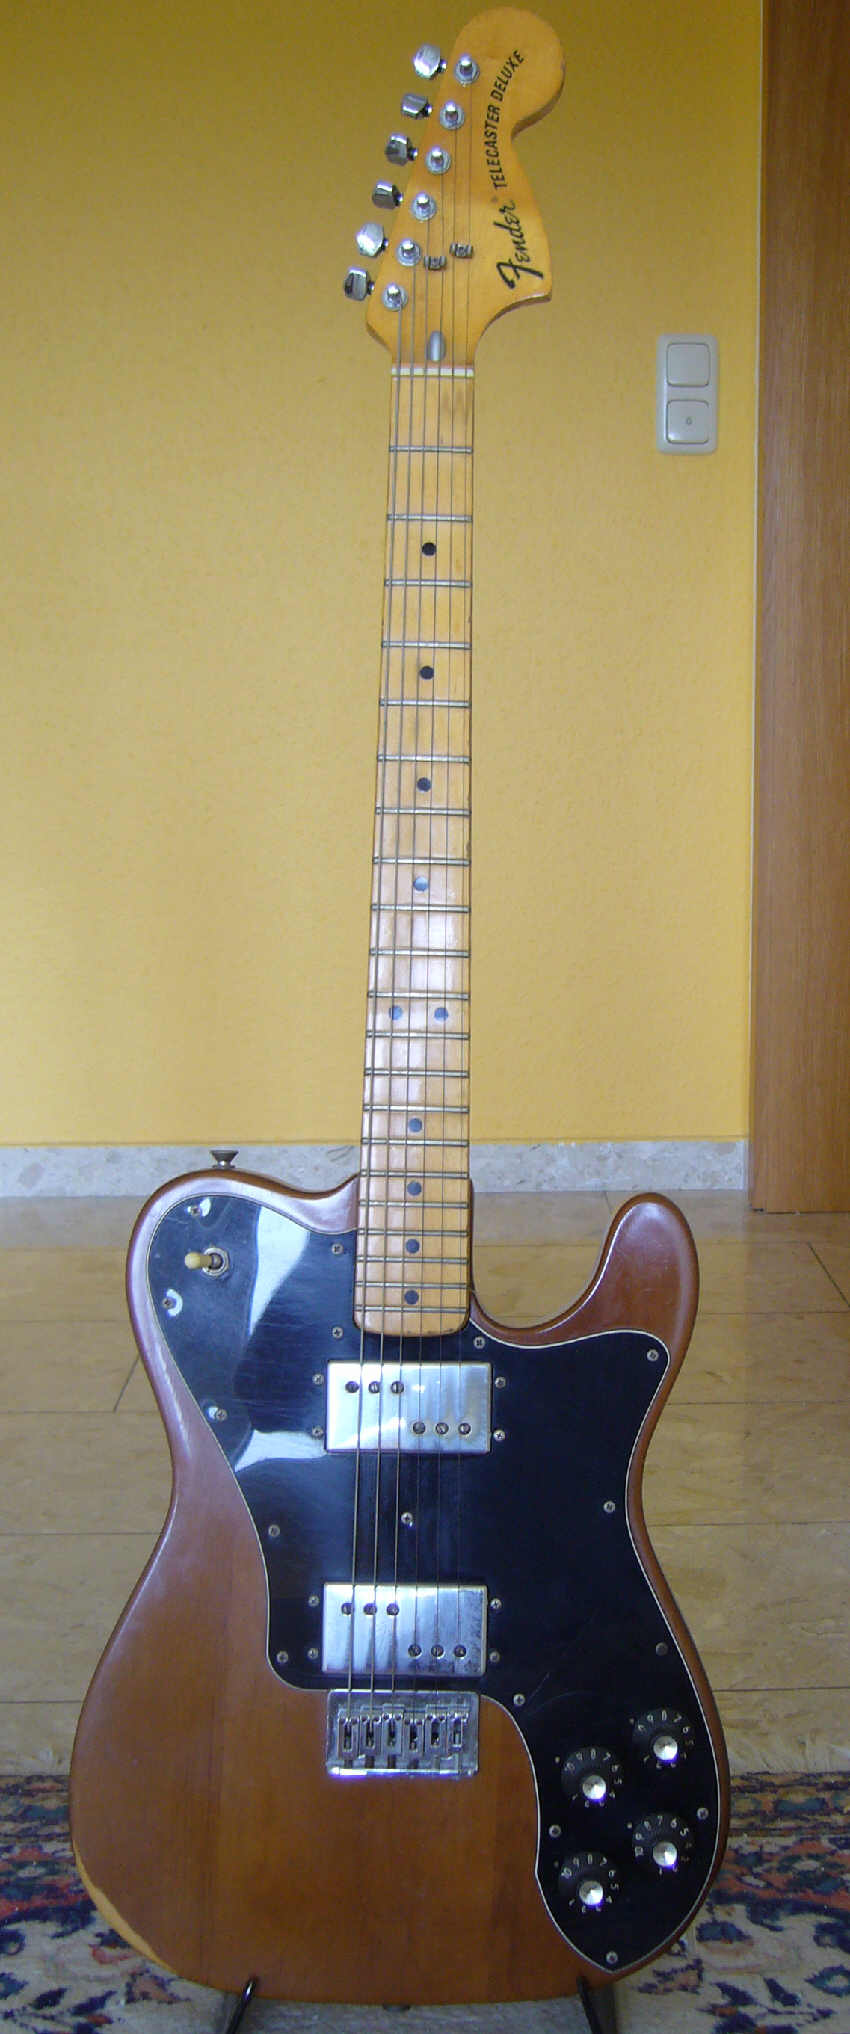 Fender-Telecaster-Deluxe.jpg